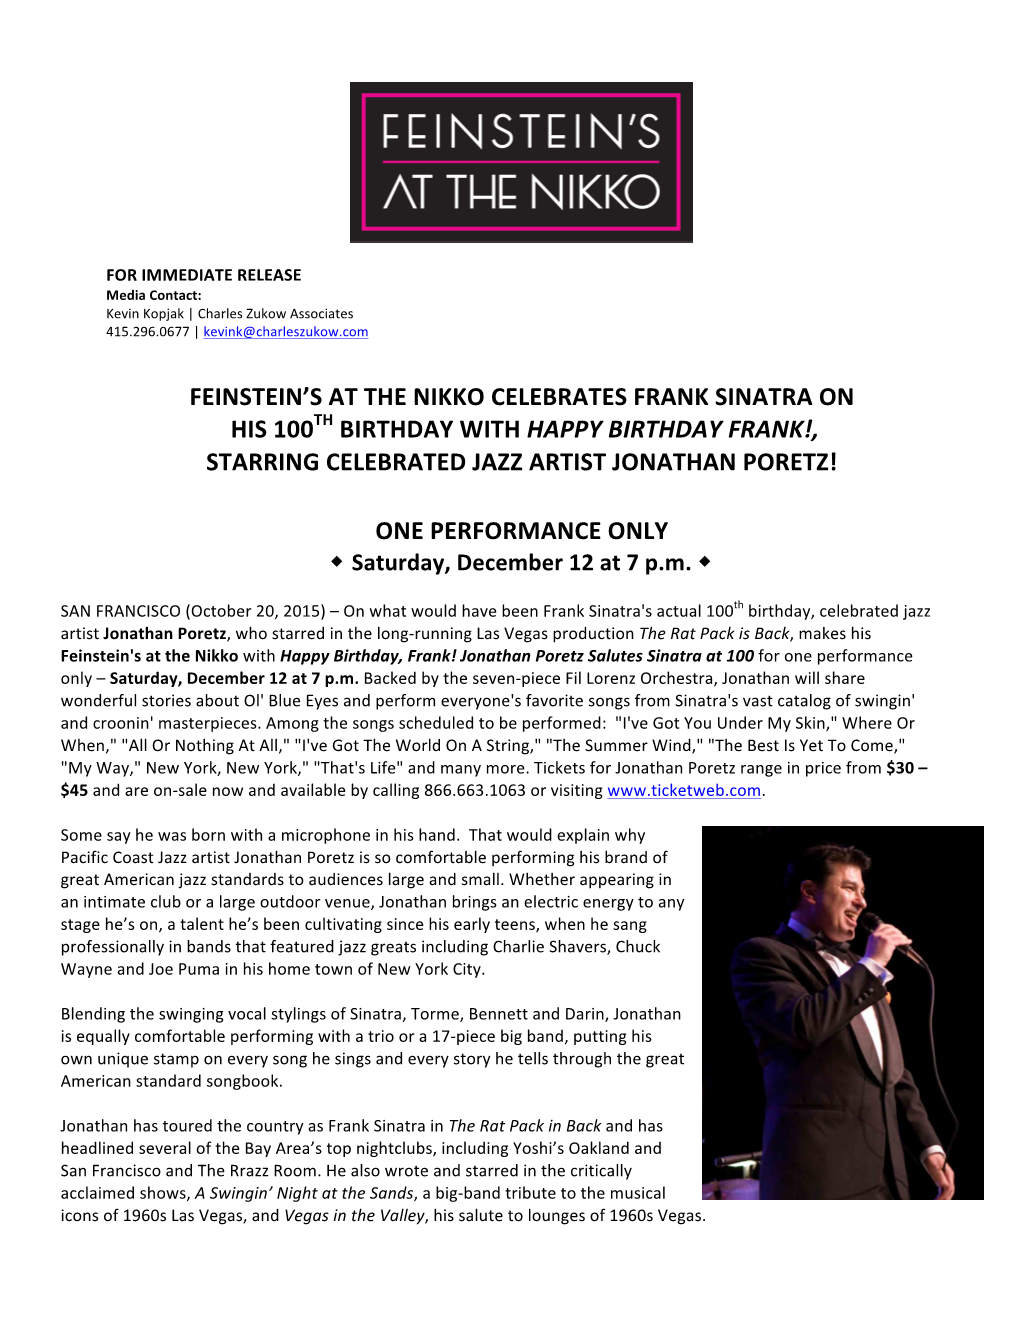 Feinstein's at the Nikko Celebrates Frank Sinatra